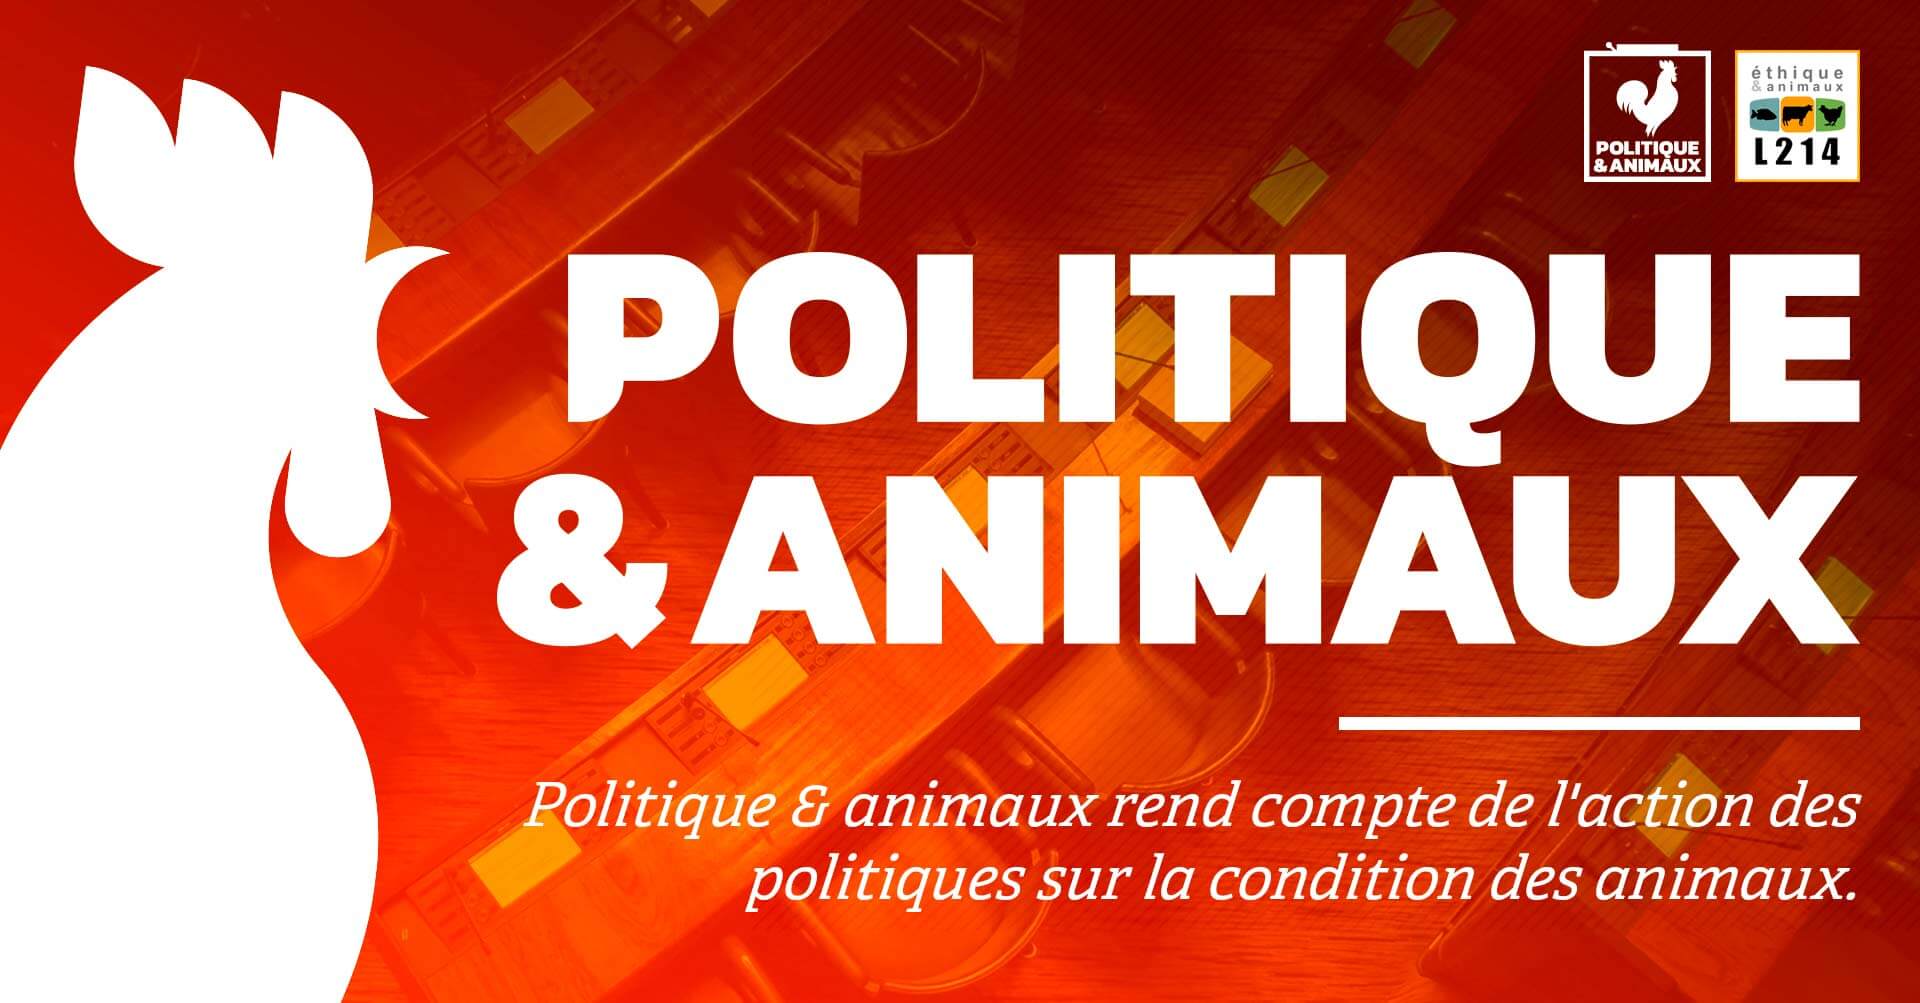 www.politique-animaux.fr